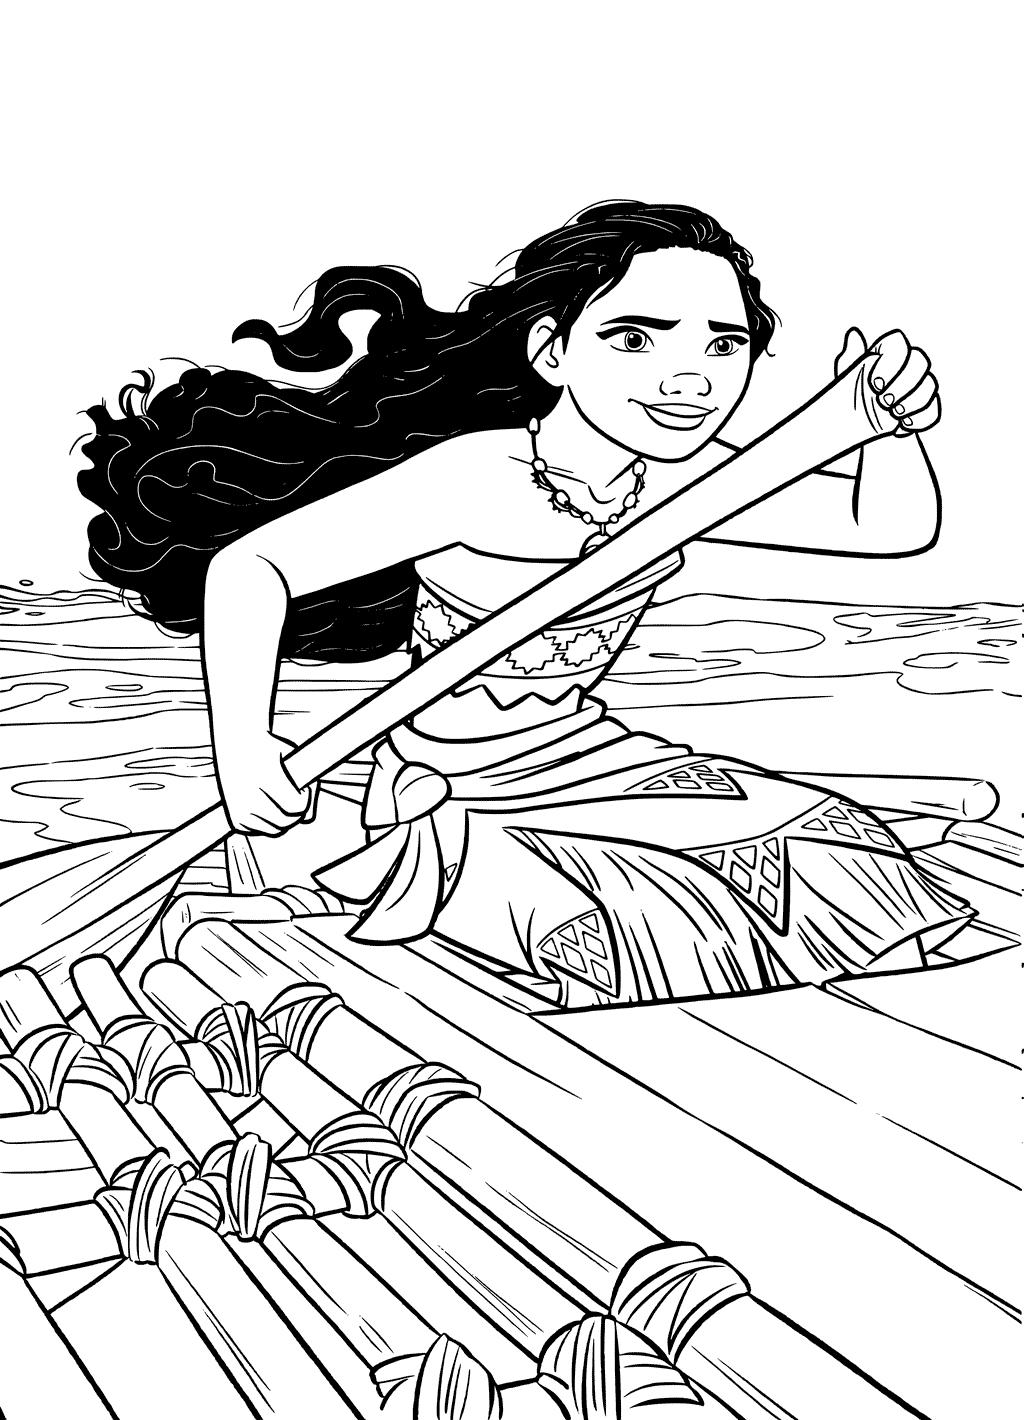  Раскраска Моана с веслом в руках